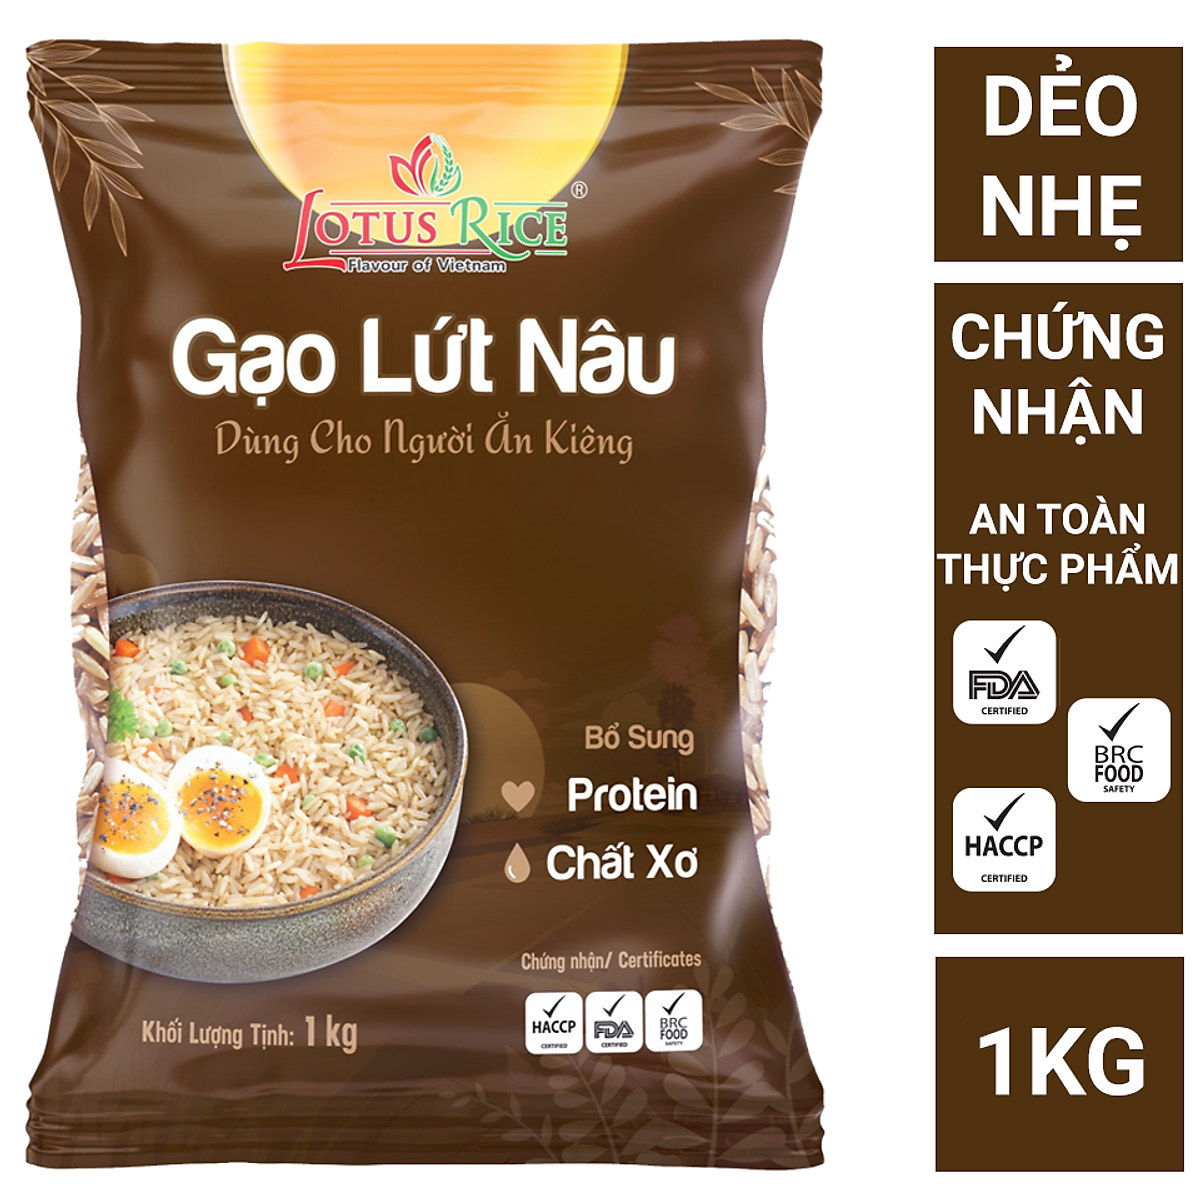 Gạo Lứt Nâu Lotus Rice 1kg - Tốt cho người ăn kiêng - Dễ ăn dễ nấu